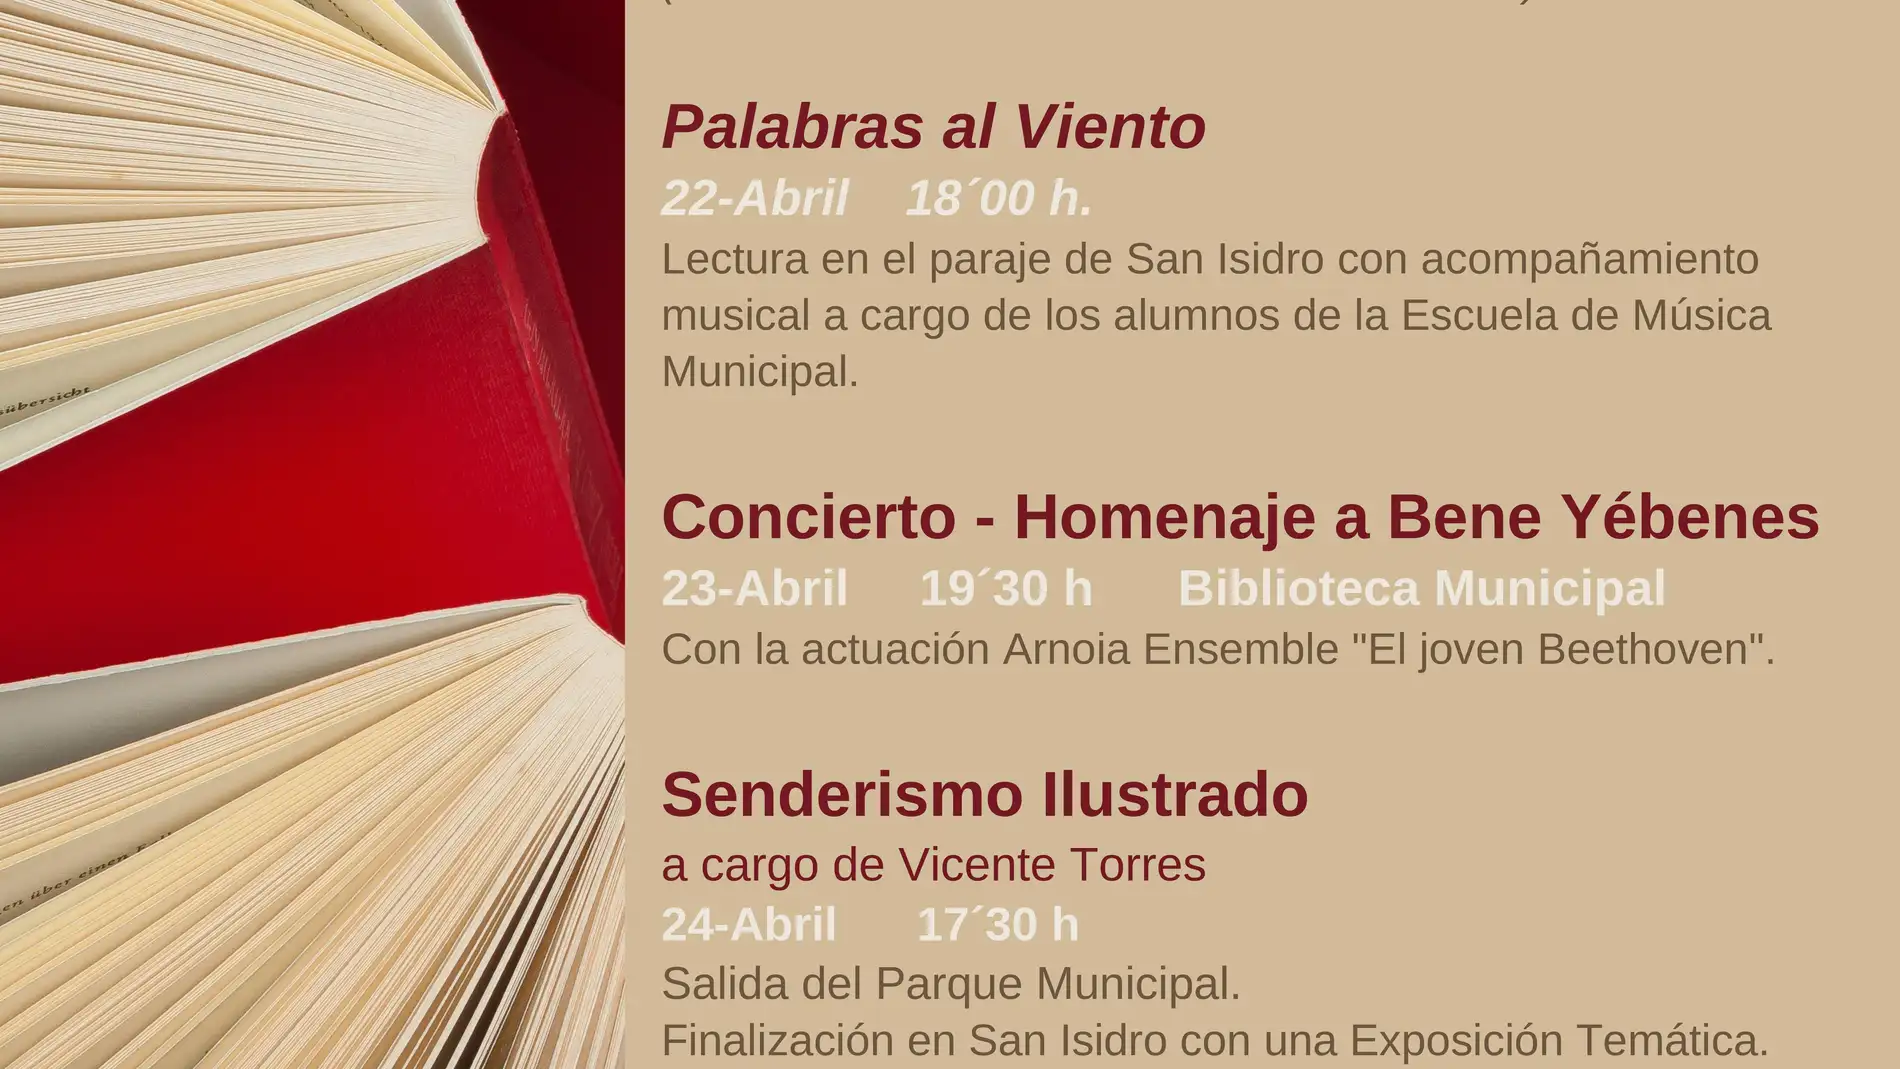 Senderismo, música y lecturas al aire libre centrarán las Jornadas Culturales de Miguel Esteban